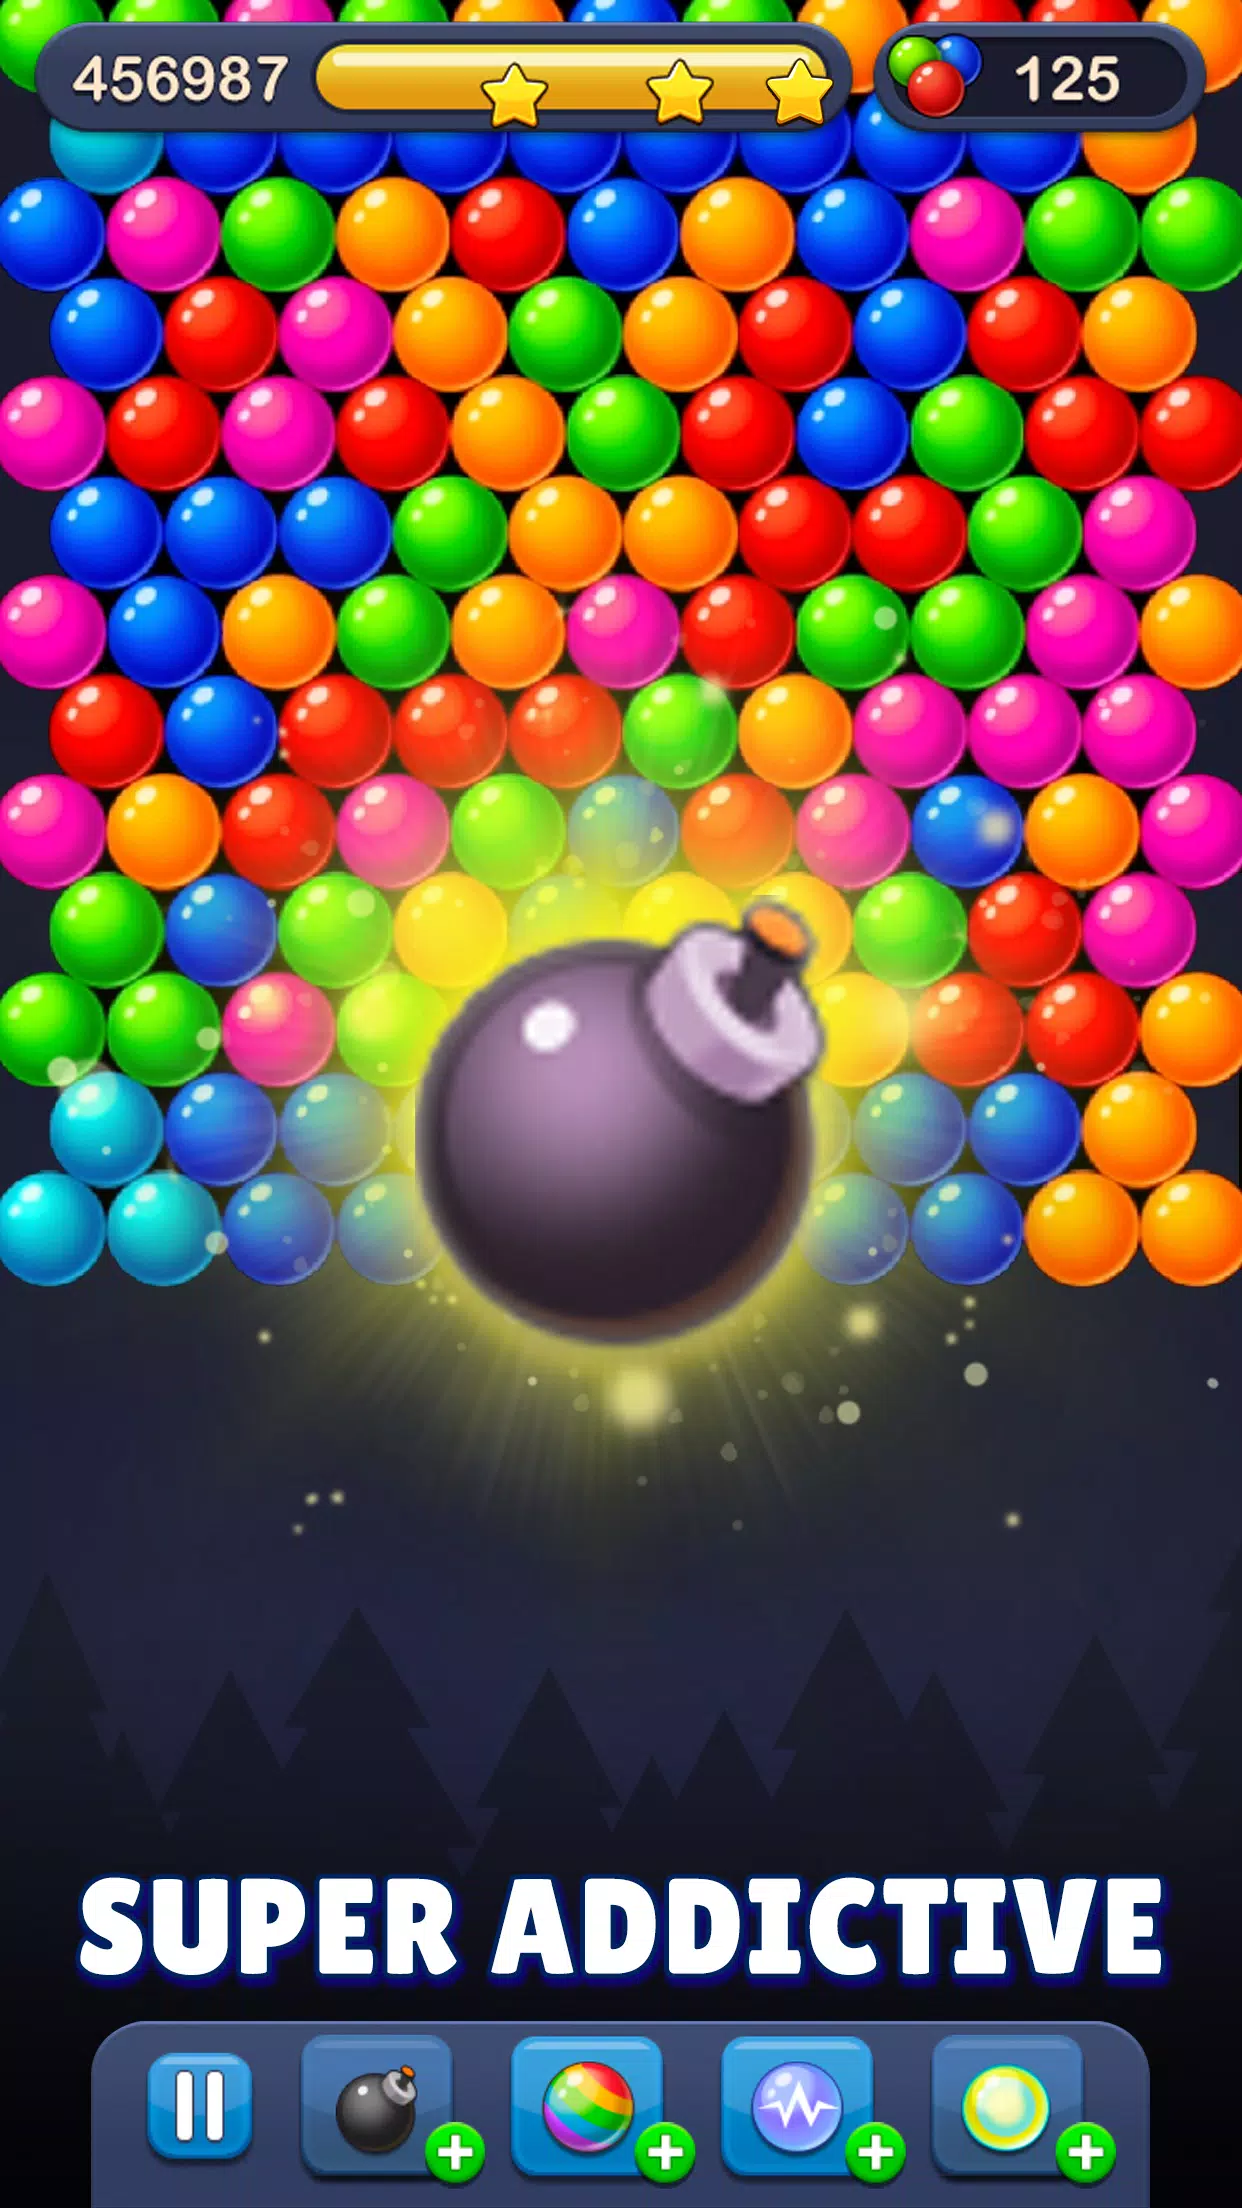 Bubble Pop - Shoot Bubbles na App Store